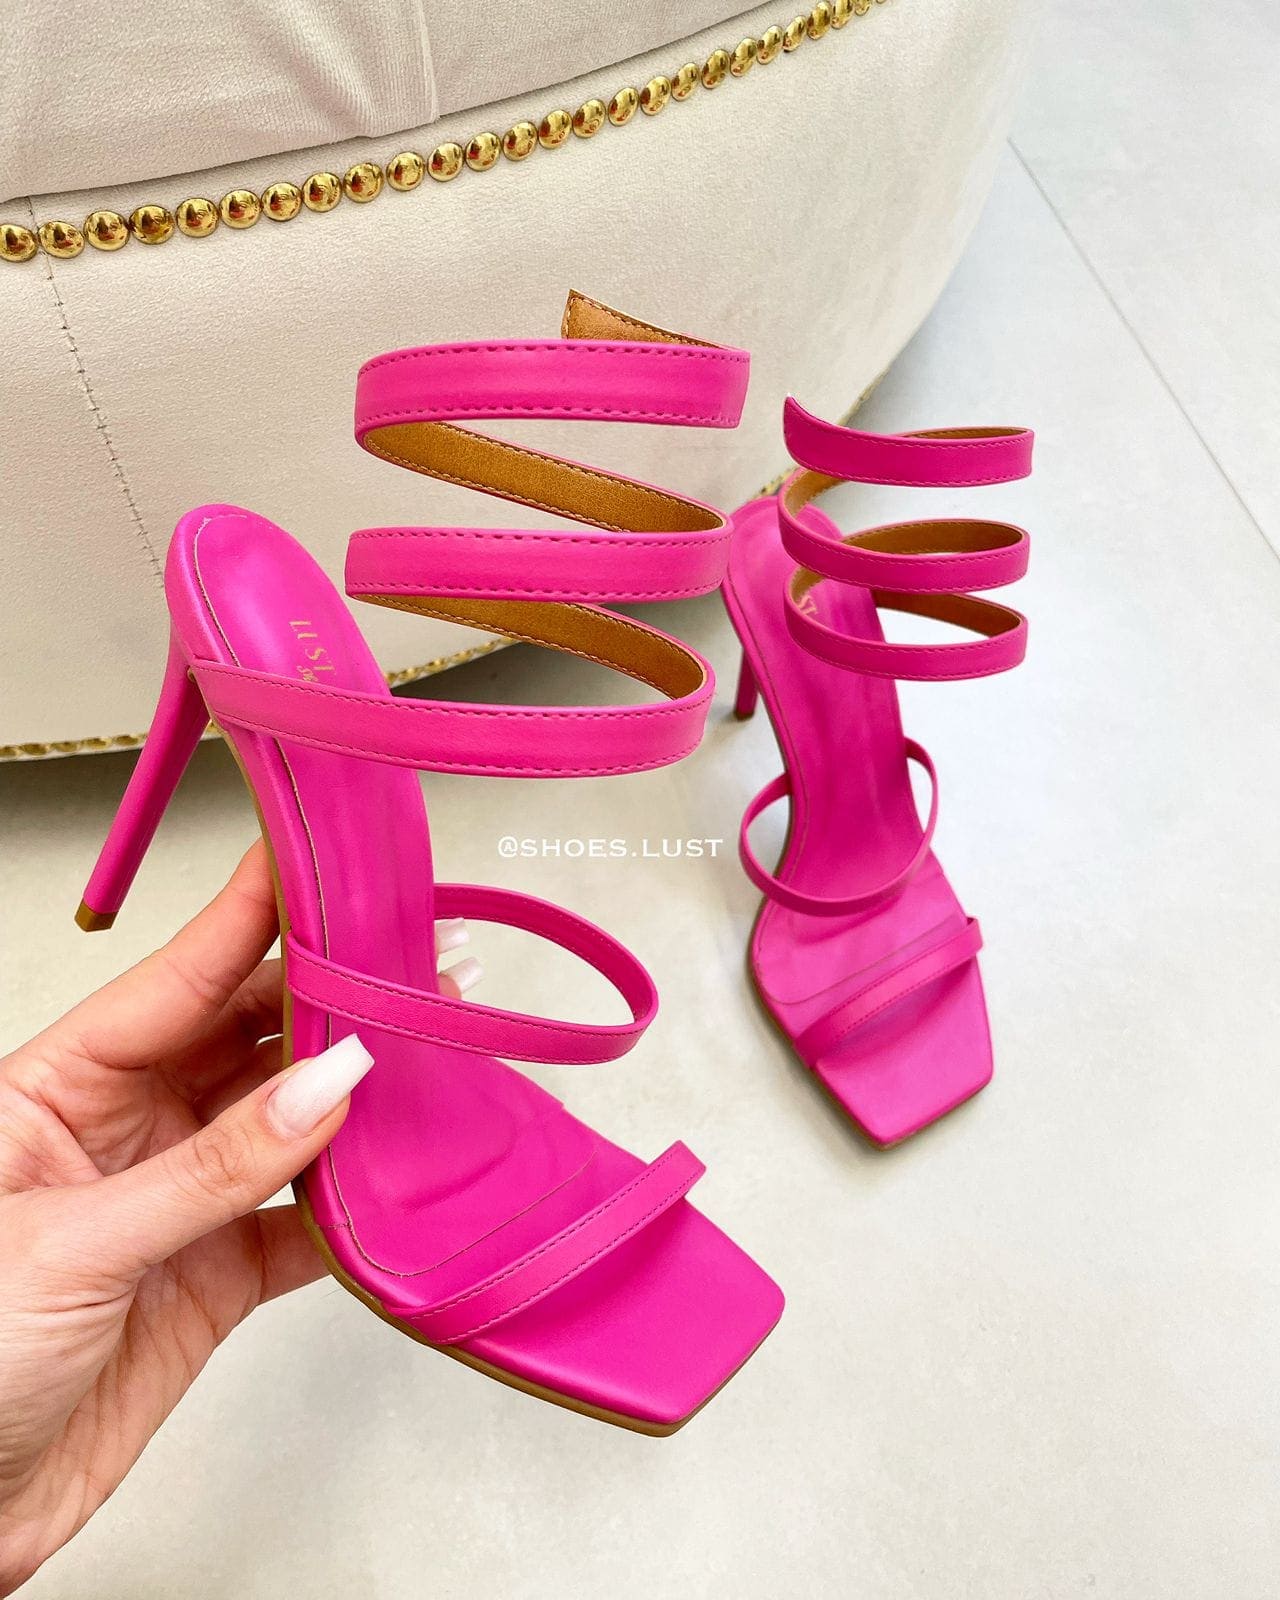 sandalia lust shoes salto fino enola pink 82641.jpeg